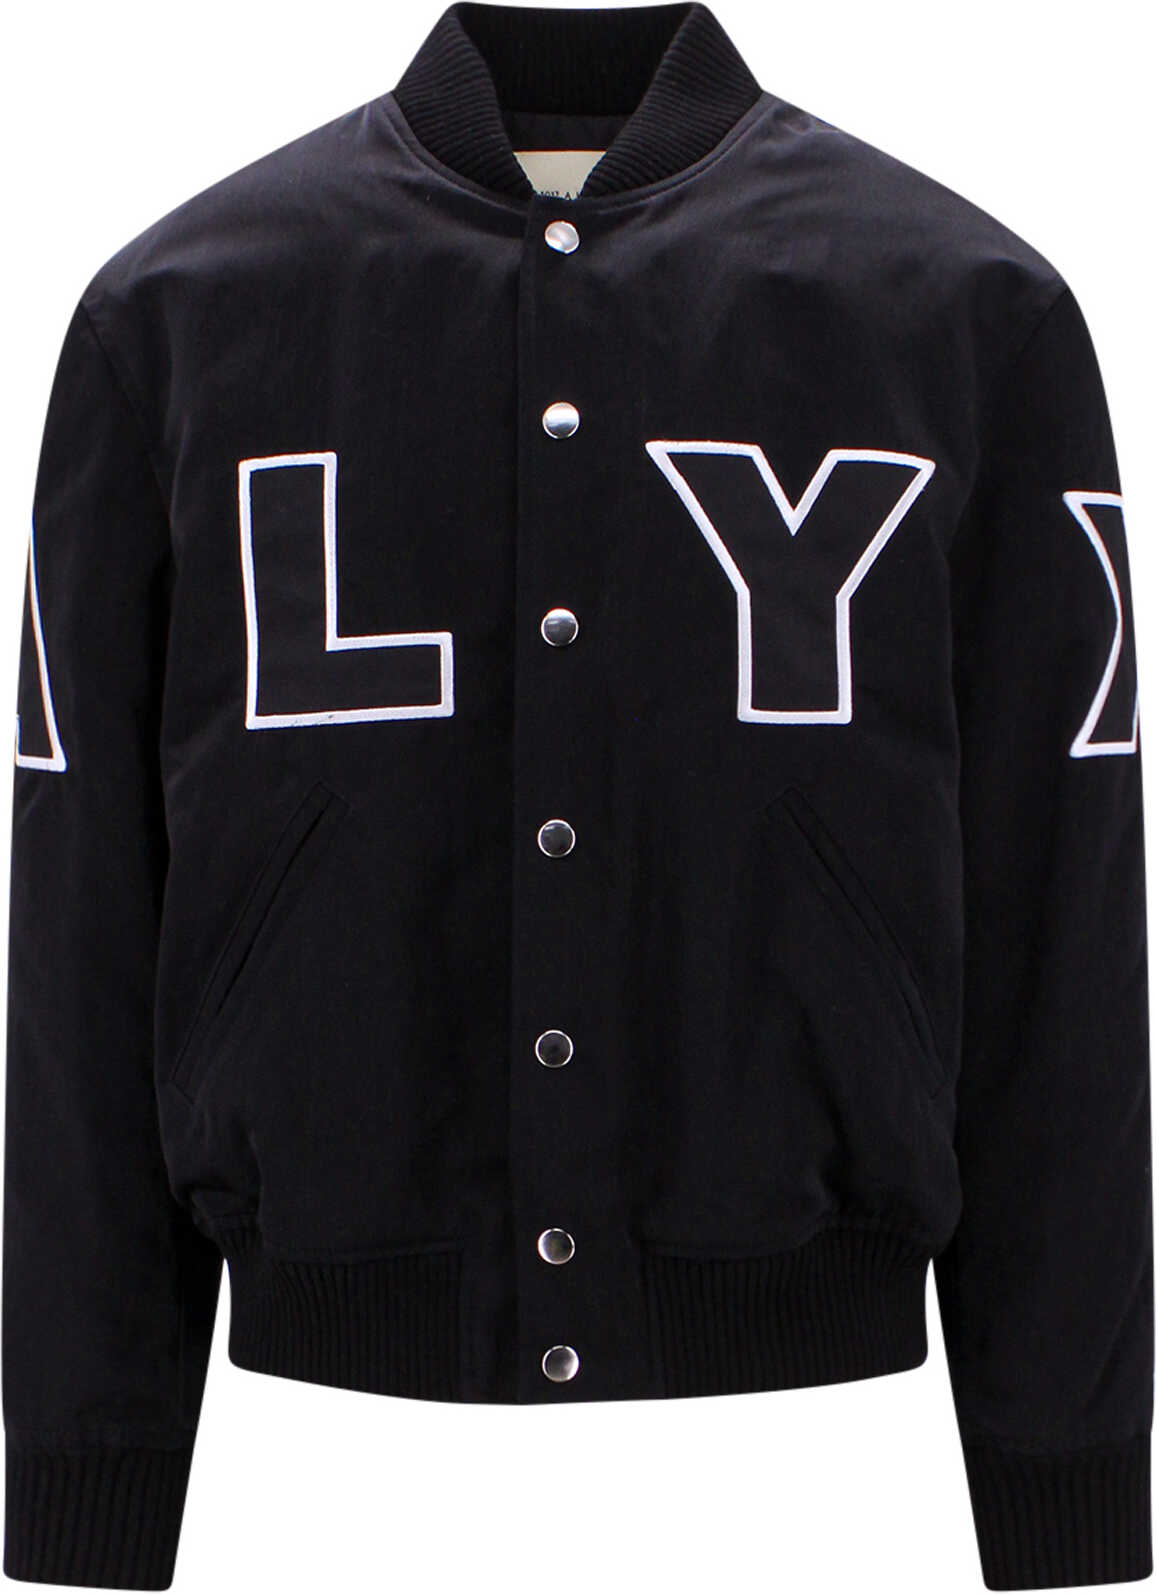 Alyx Jacket Black